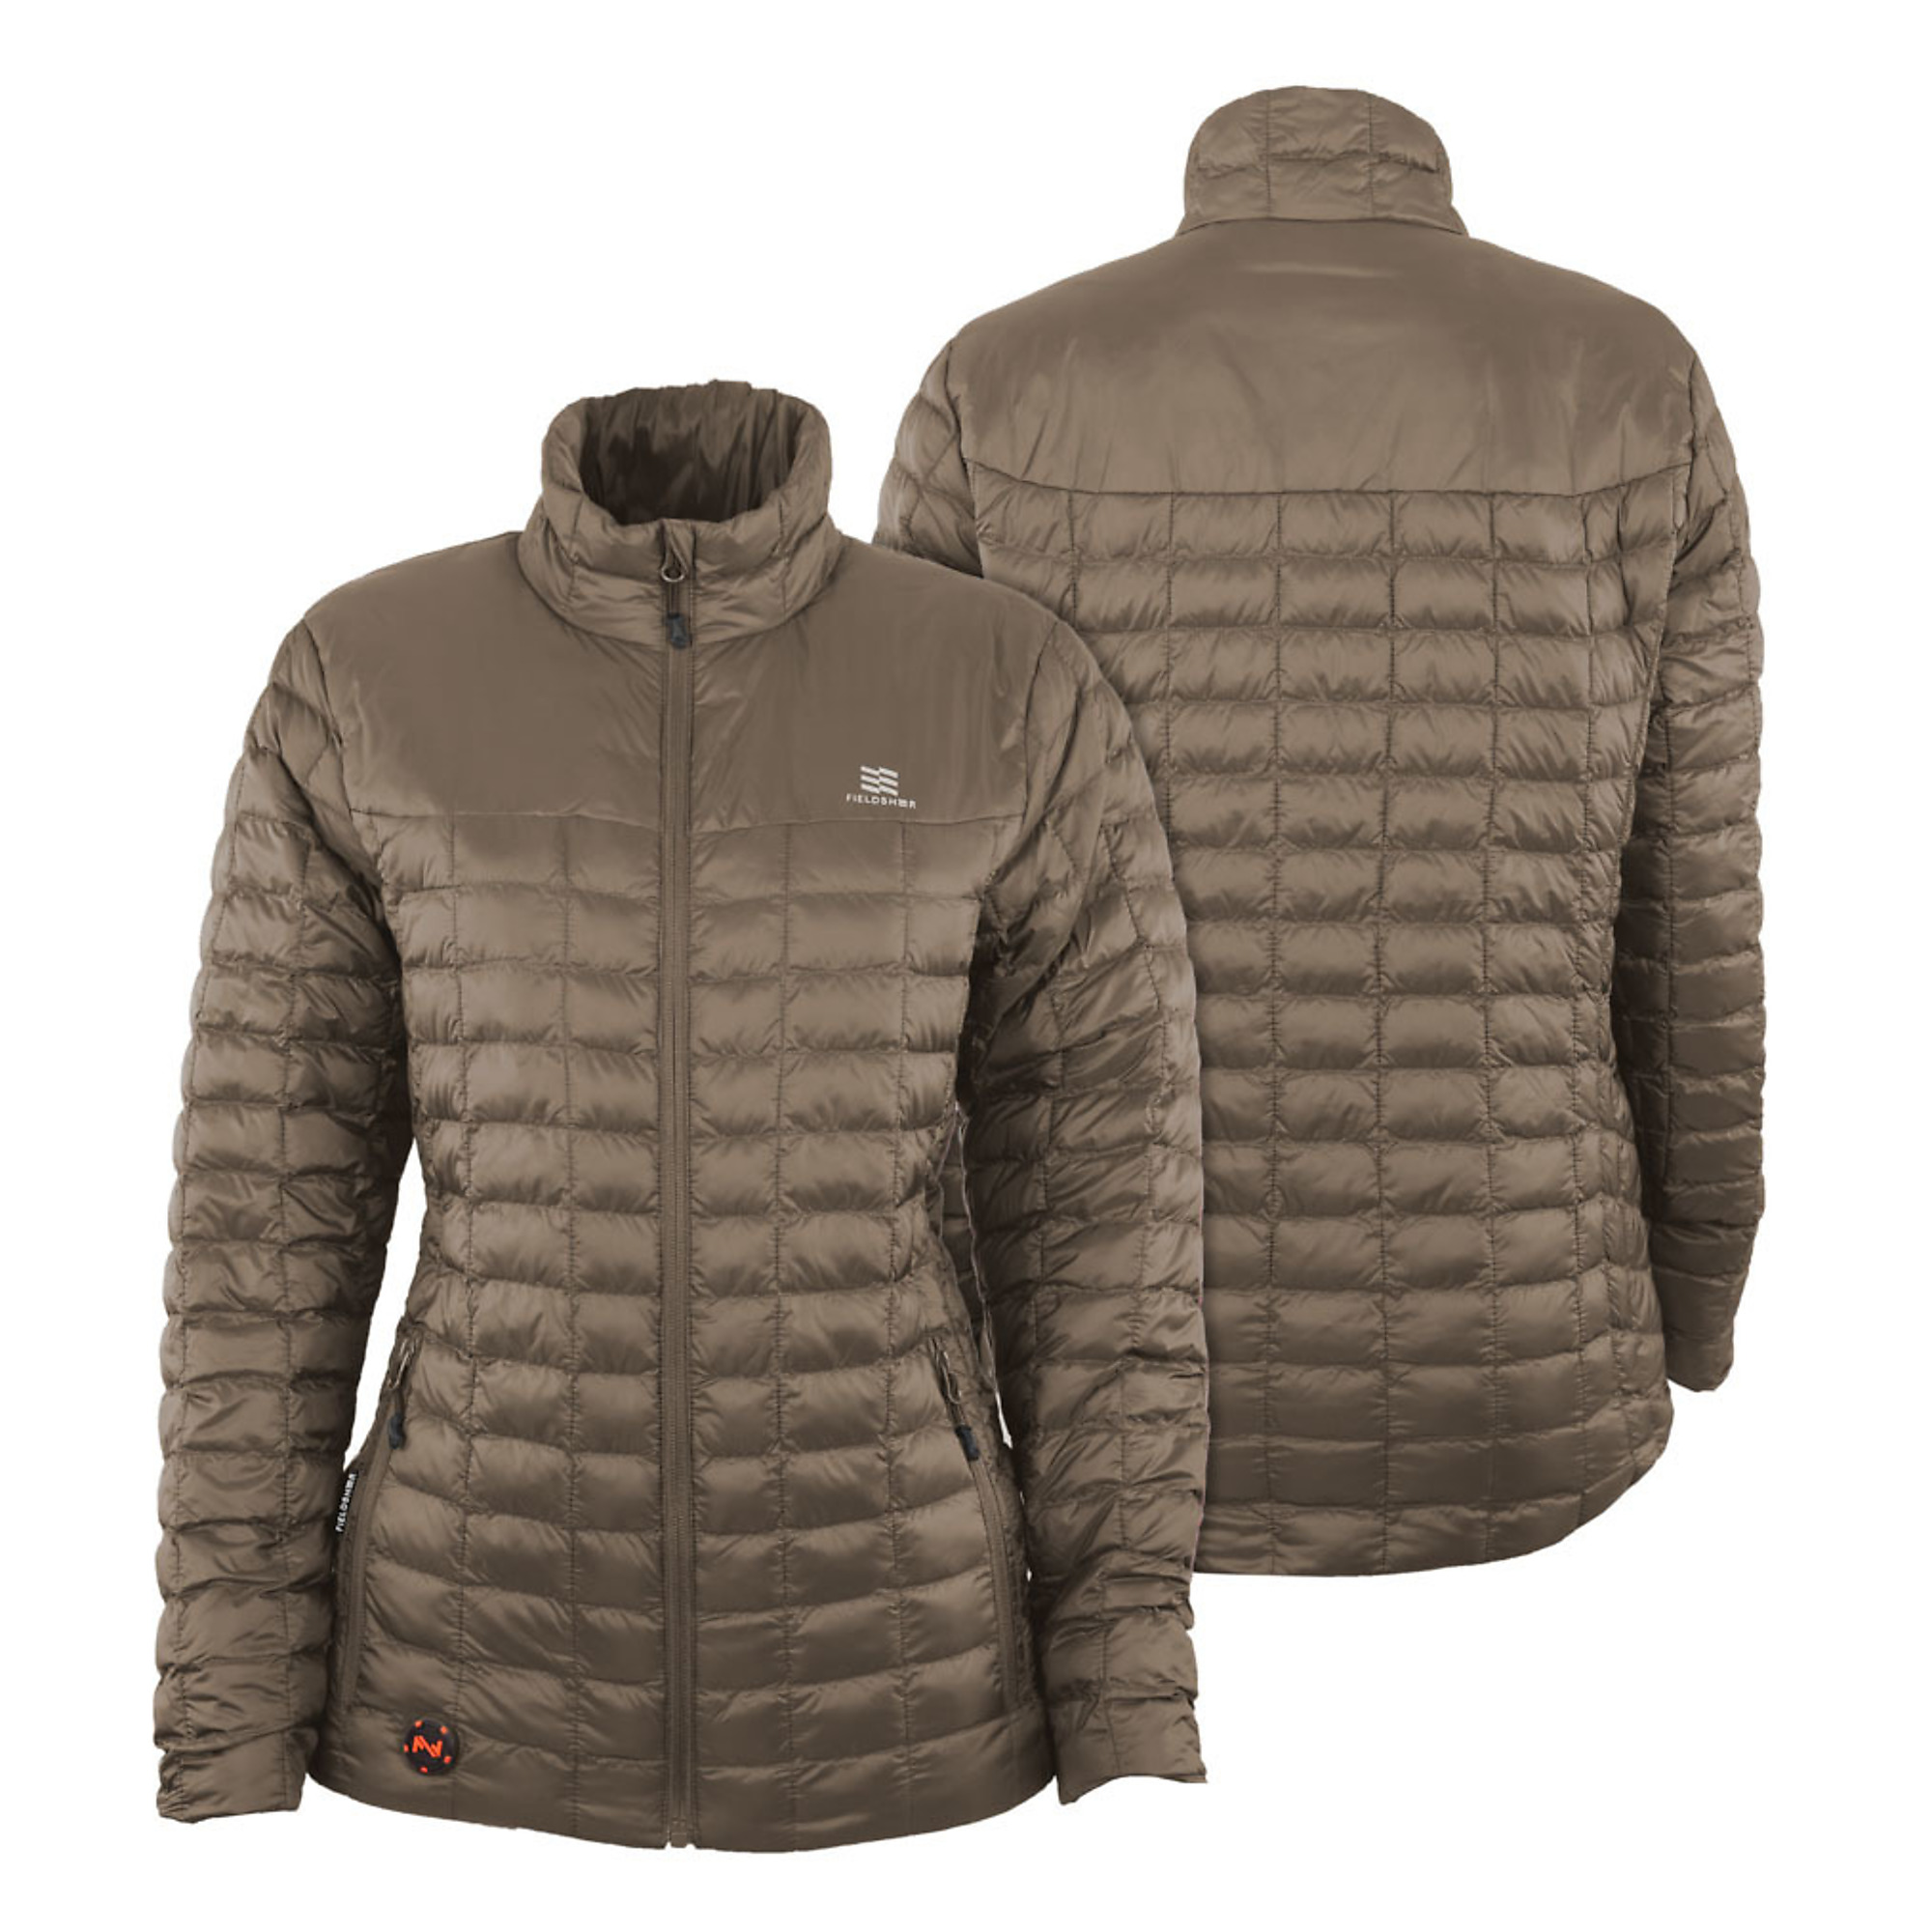 Fieldsheer, Women's 7.4v Backcountry Heated Jacket, Size XS, Color Tan, Model MWWJ04340121